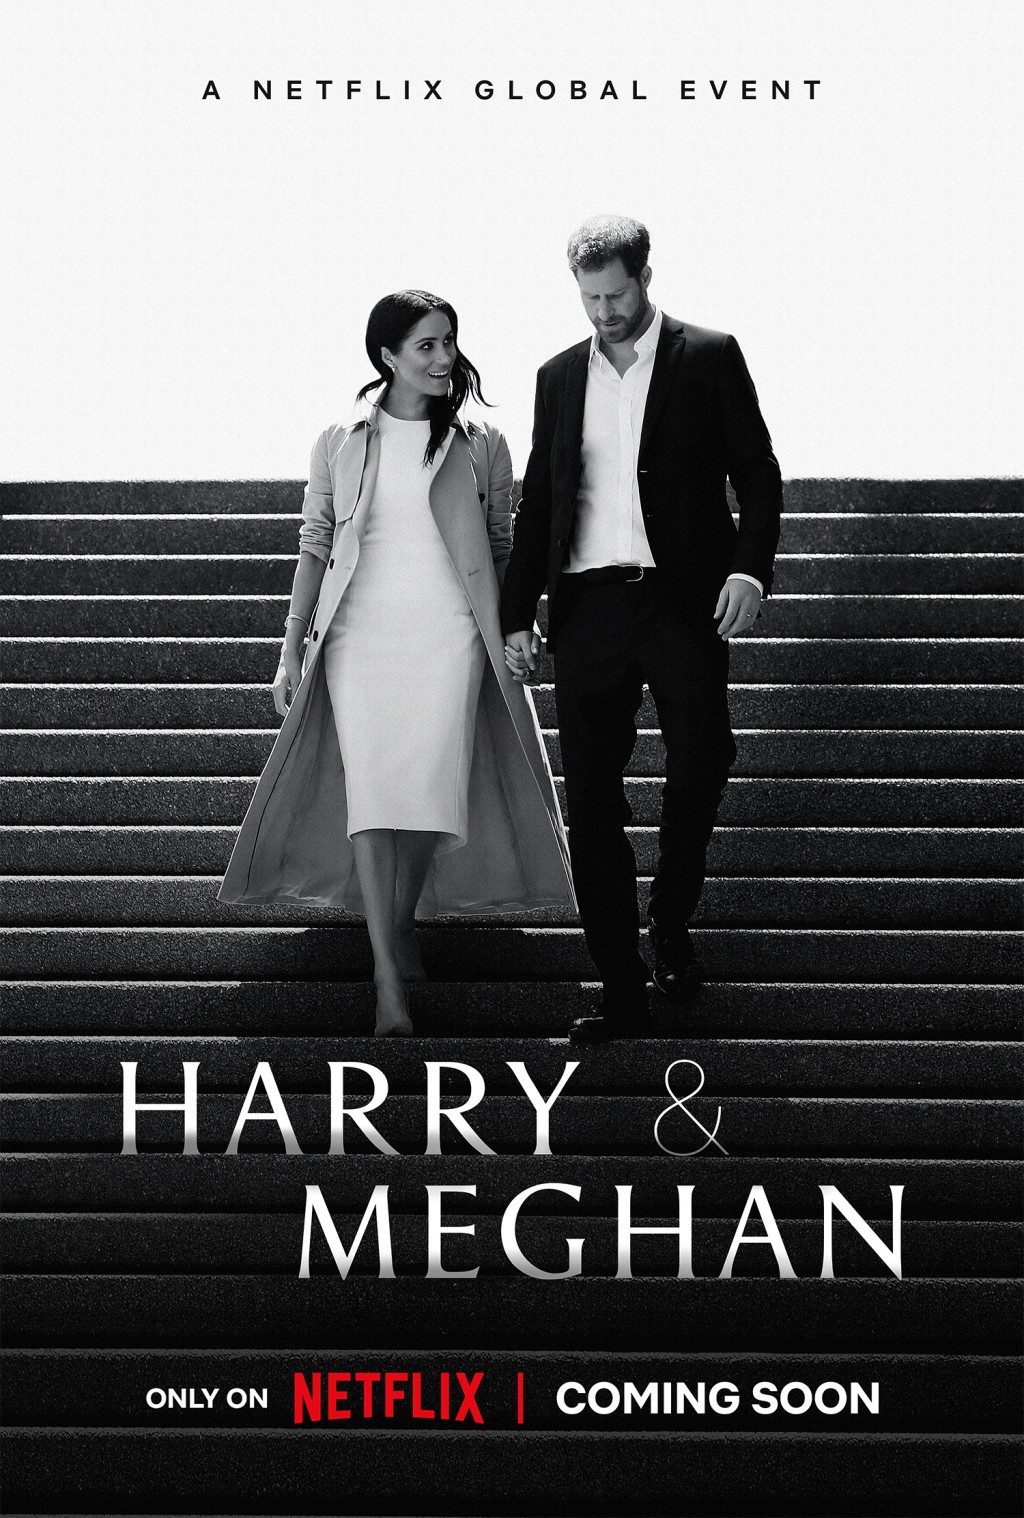 《哈里与梅根》纪录片将在Netflix紧接《皇冠》第5季后在12月播出，以延续热度。AP